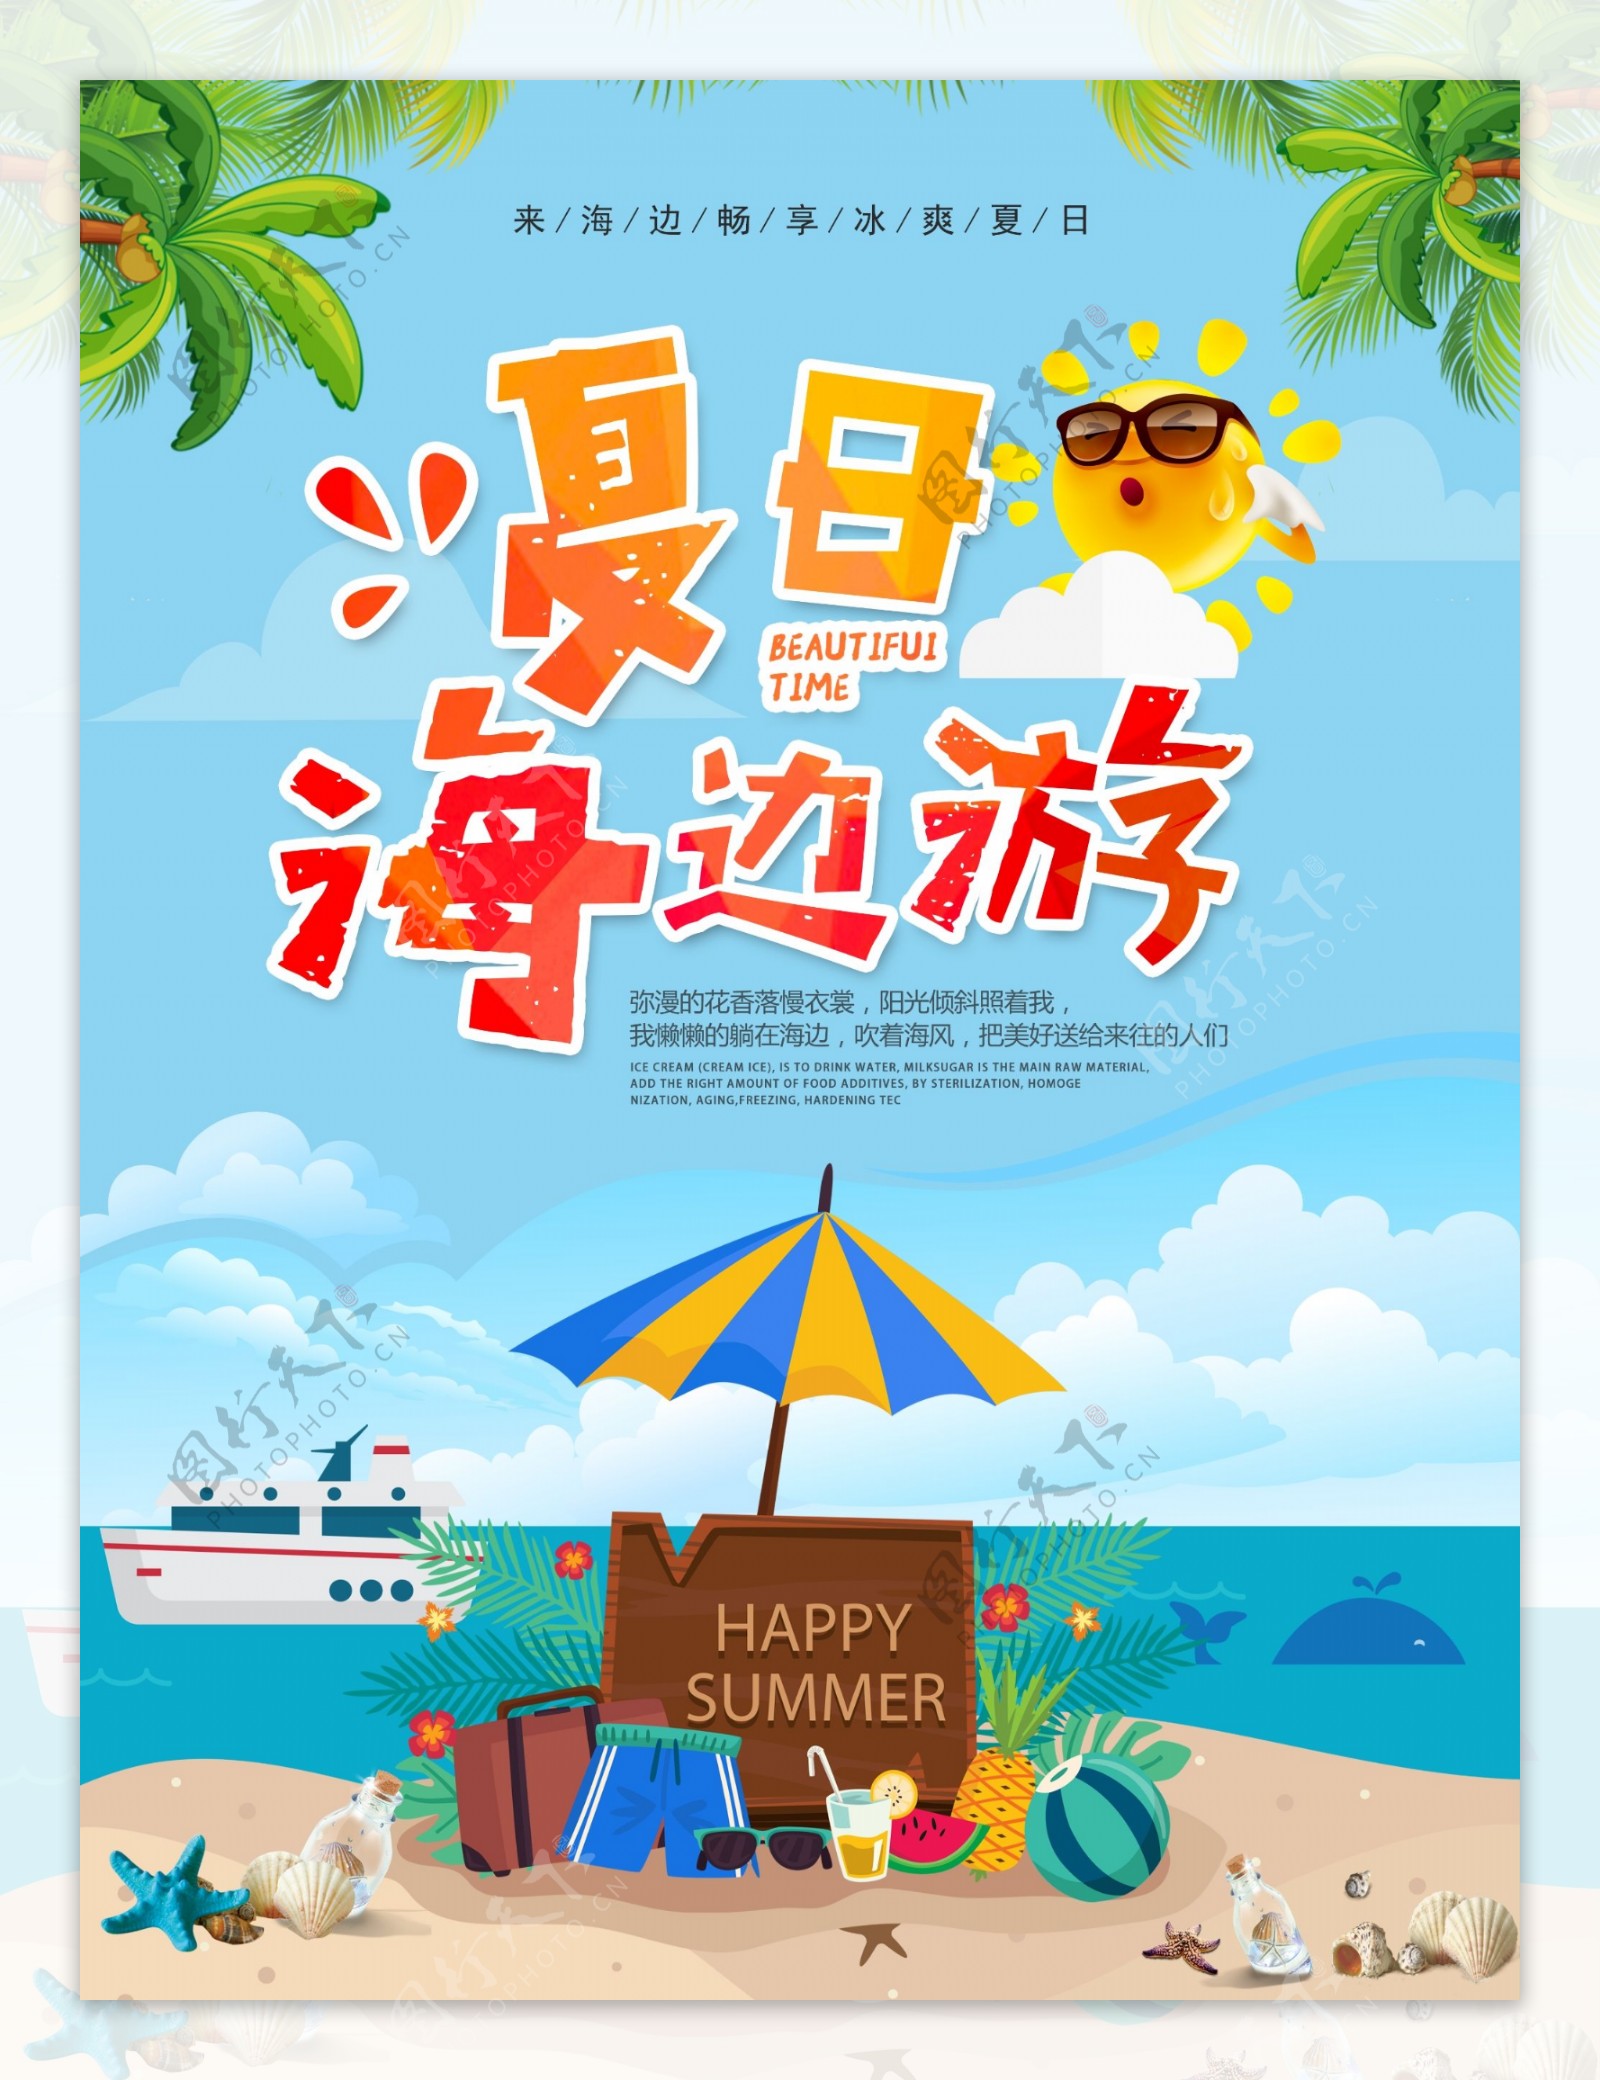 夏季海边游促销海报